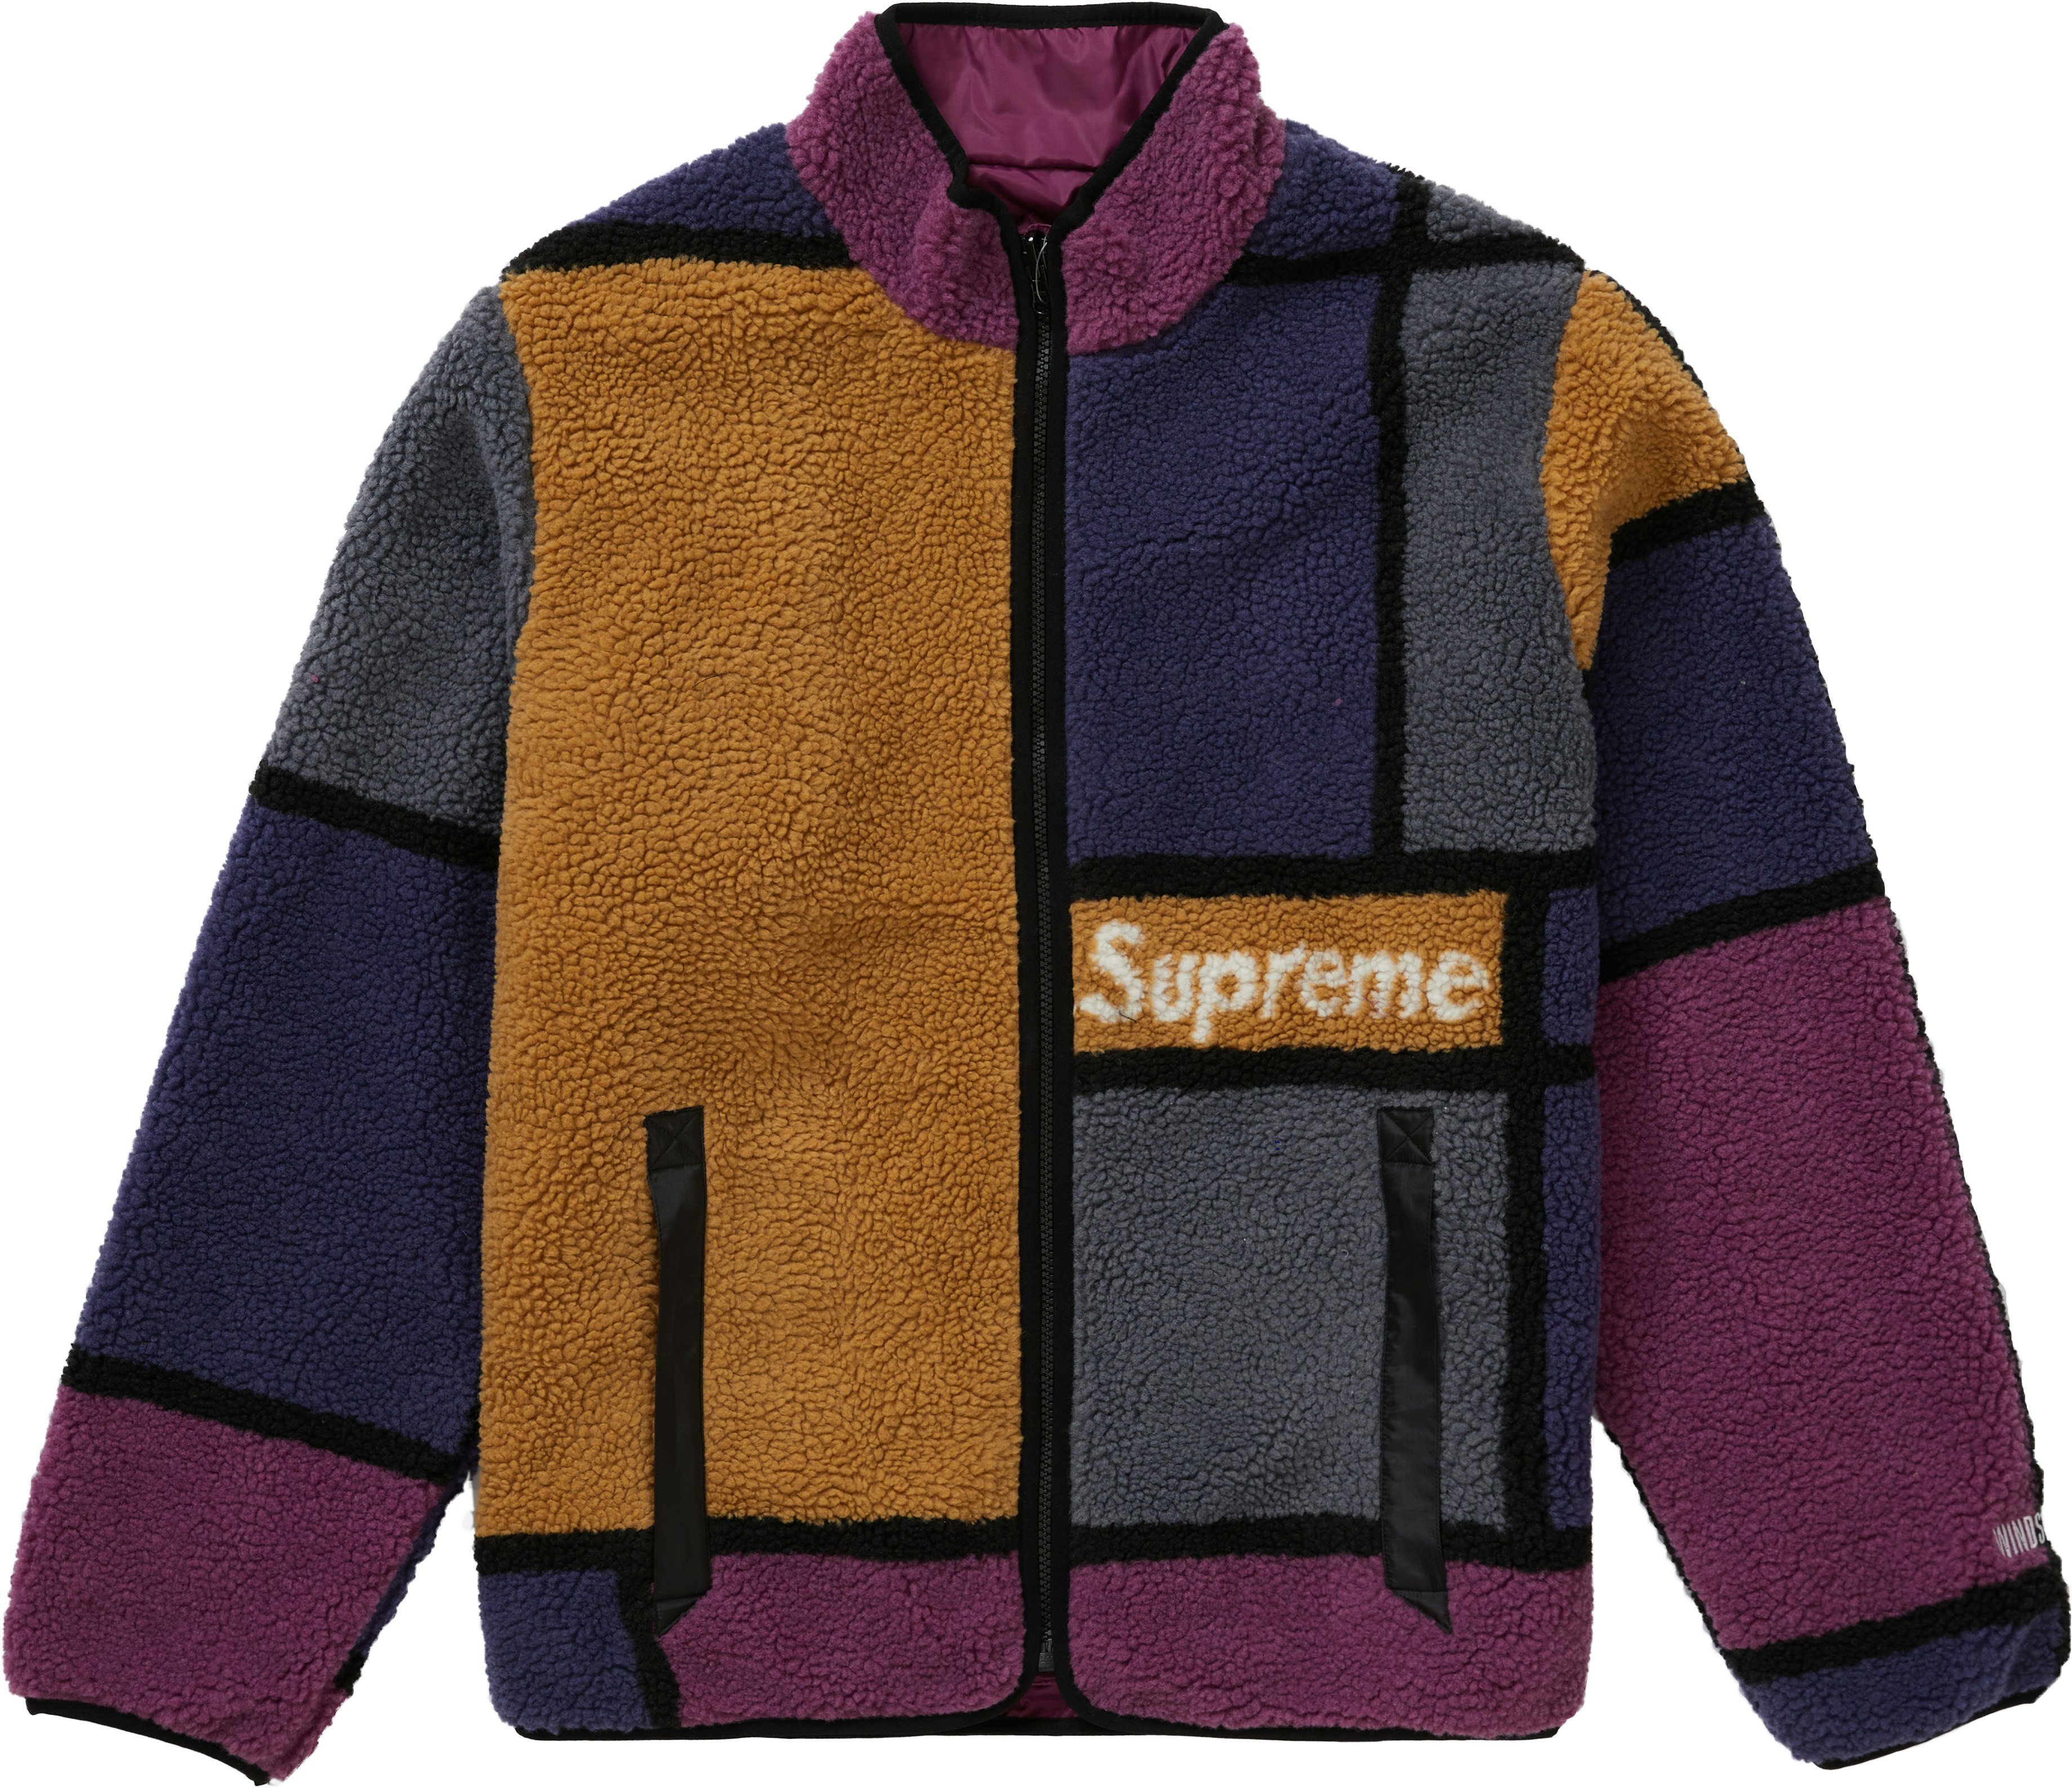 Supreme Reversible Colorblocked Fleece Jacket Purple - Novelship